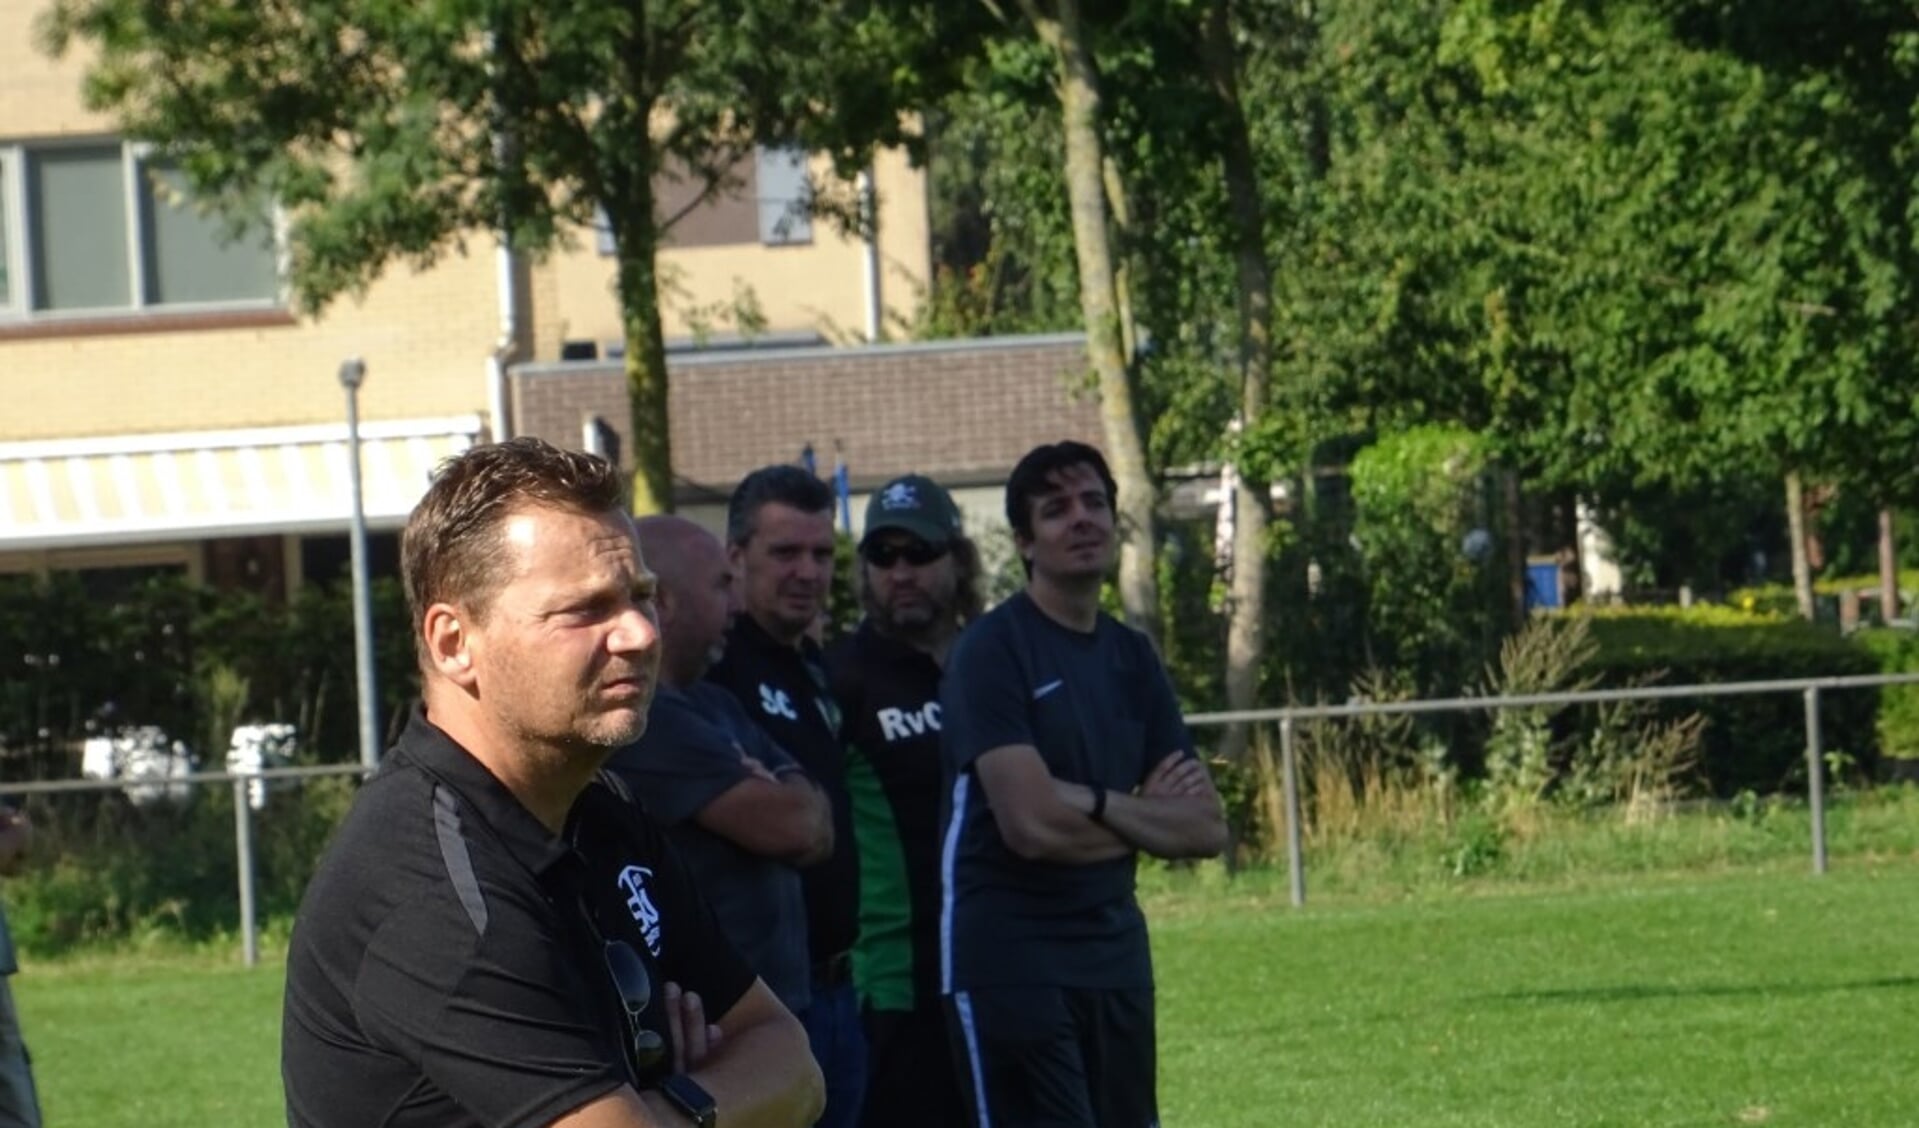 SKV-trainer Marcel van der Hoop (op archieffoto) gaat de Wageningers na een dienstverband van één jaar weer verlaten. Hij treedt met ingang van volgend seizoen in dienst als technisch manager bij zijn 'oude liefde' Blauw Geel '55 in Ede.